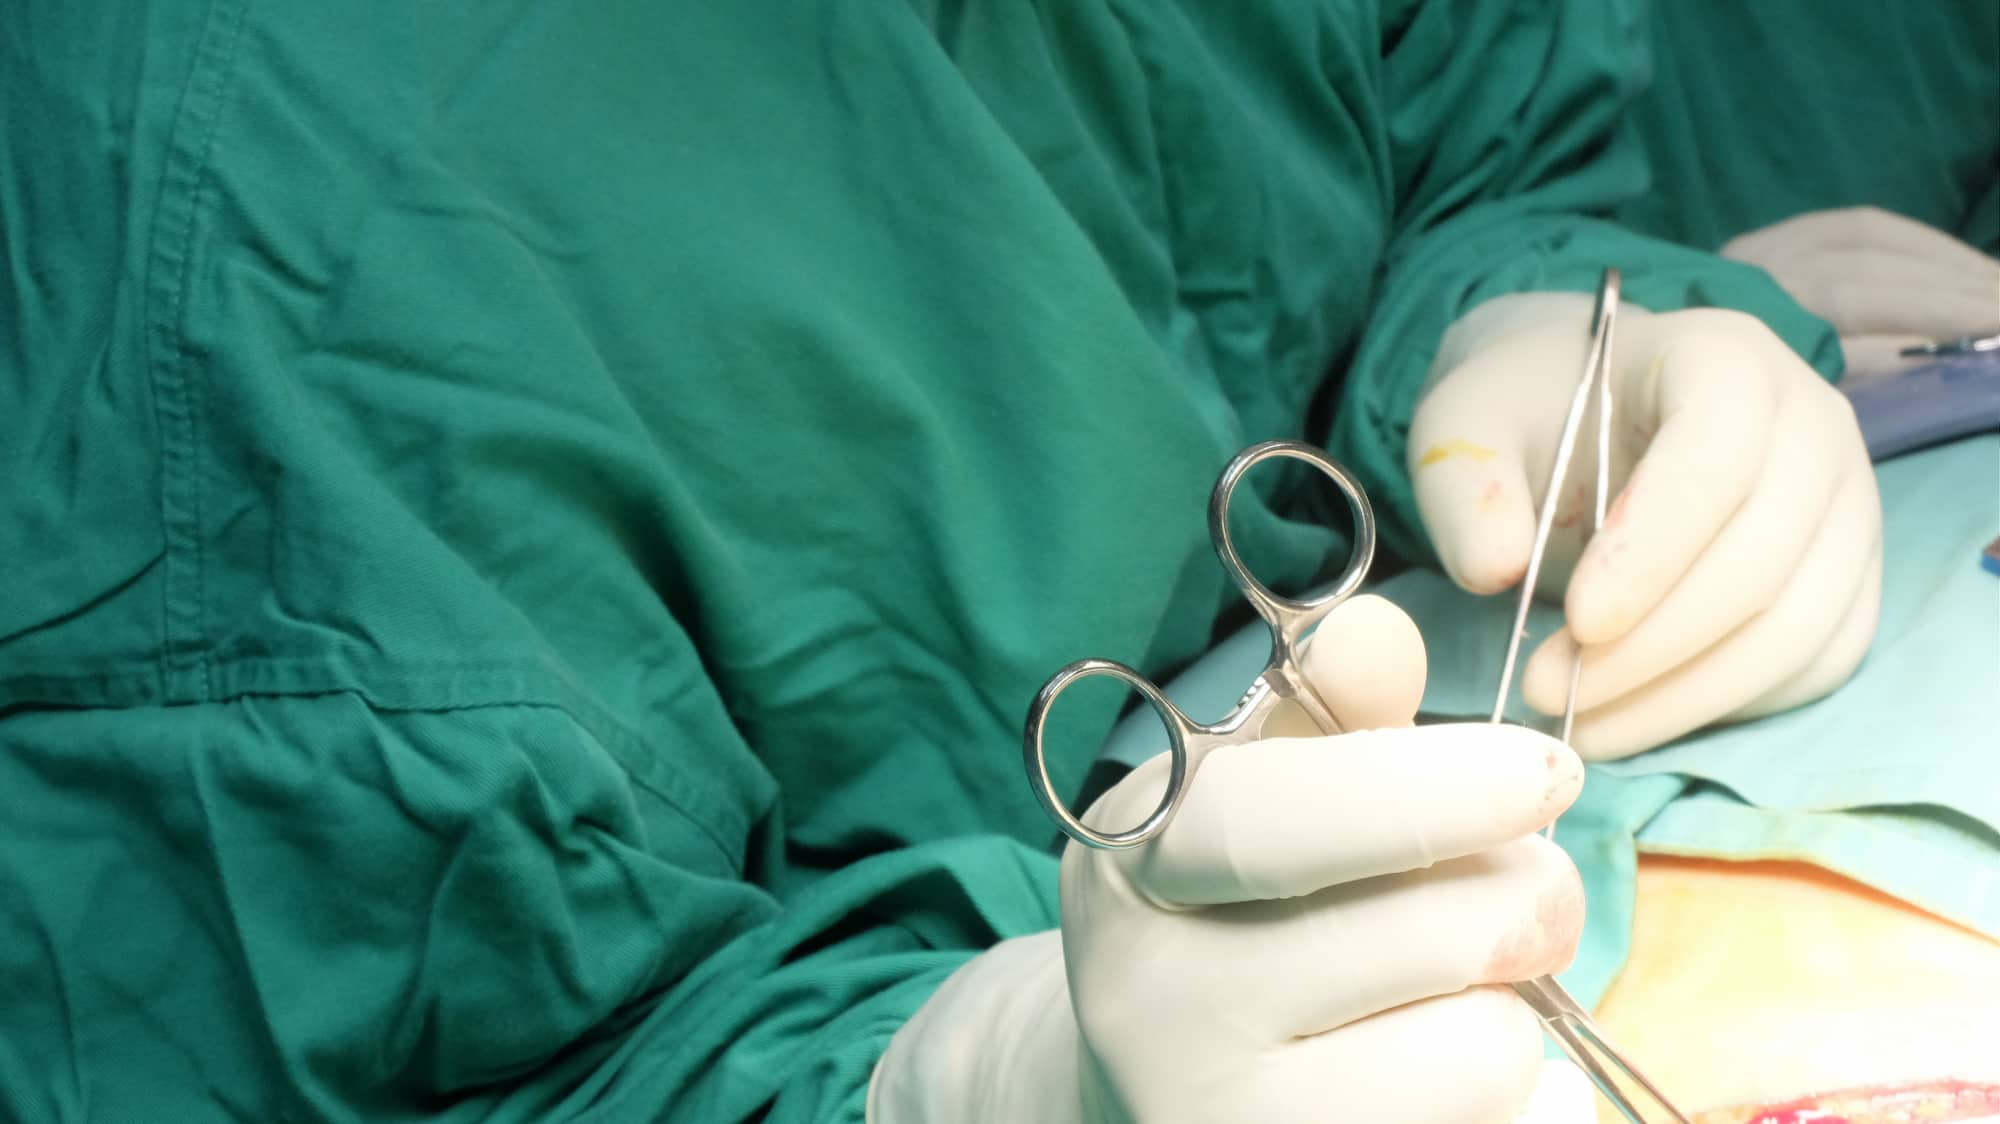 Chirurgie plastique reconstructive en turquie